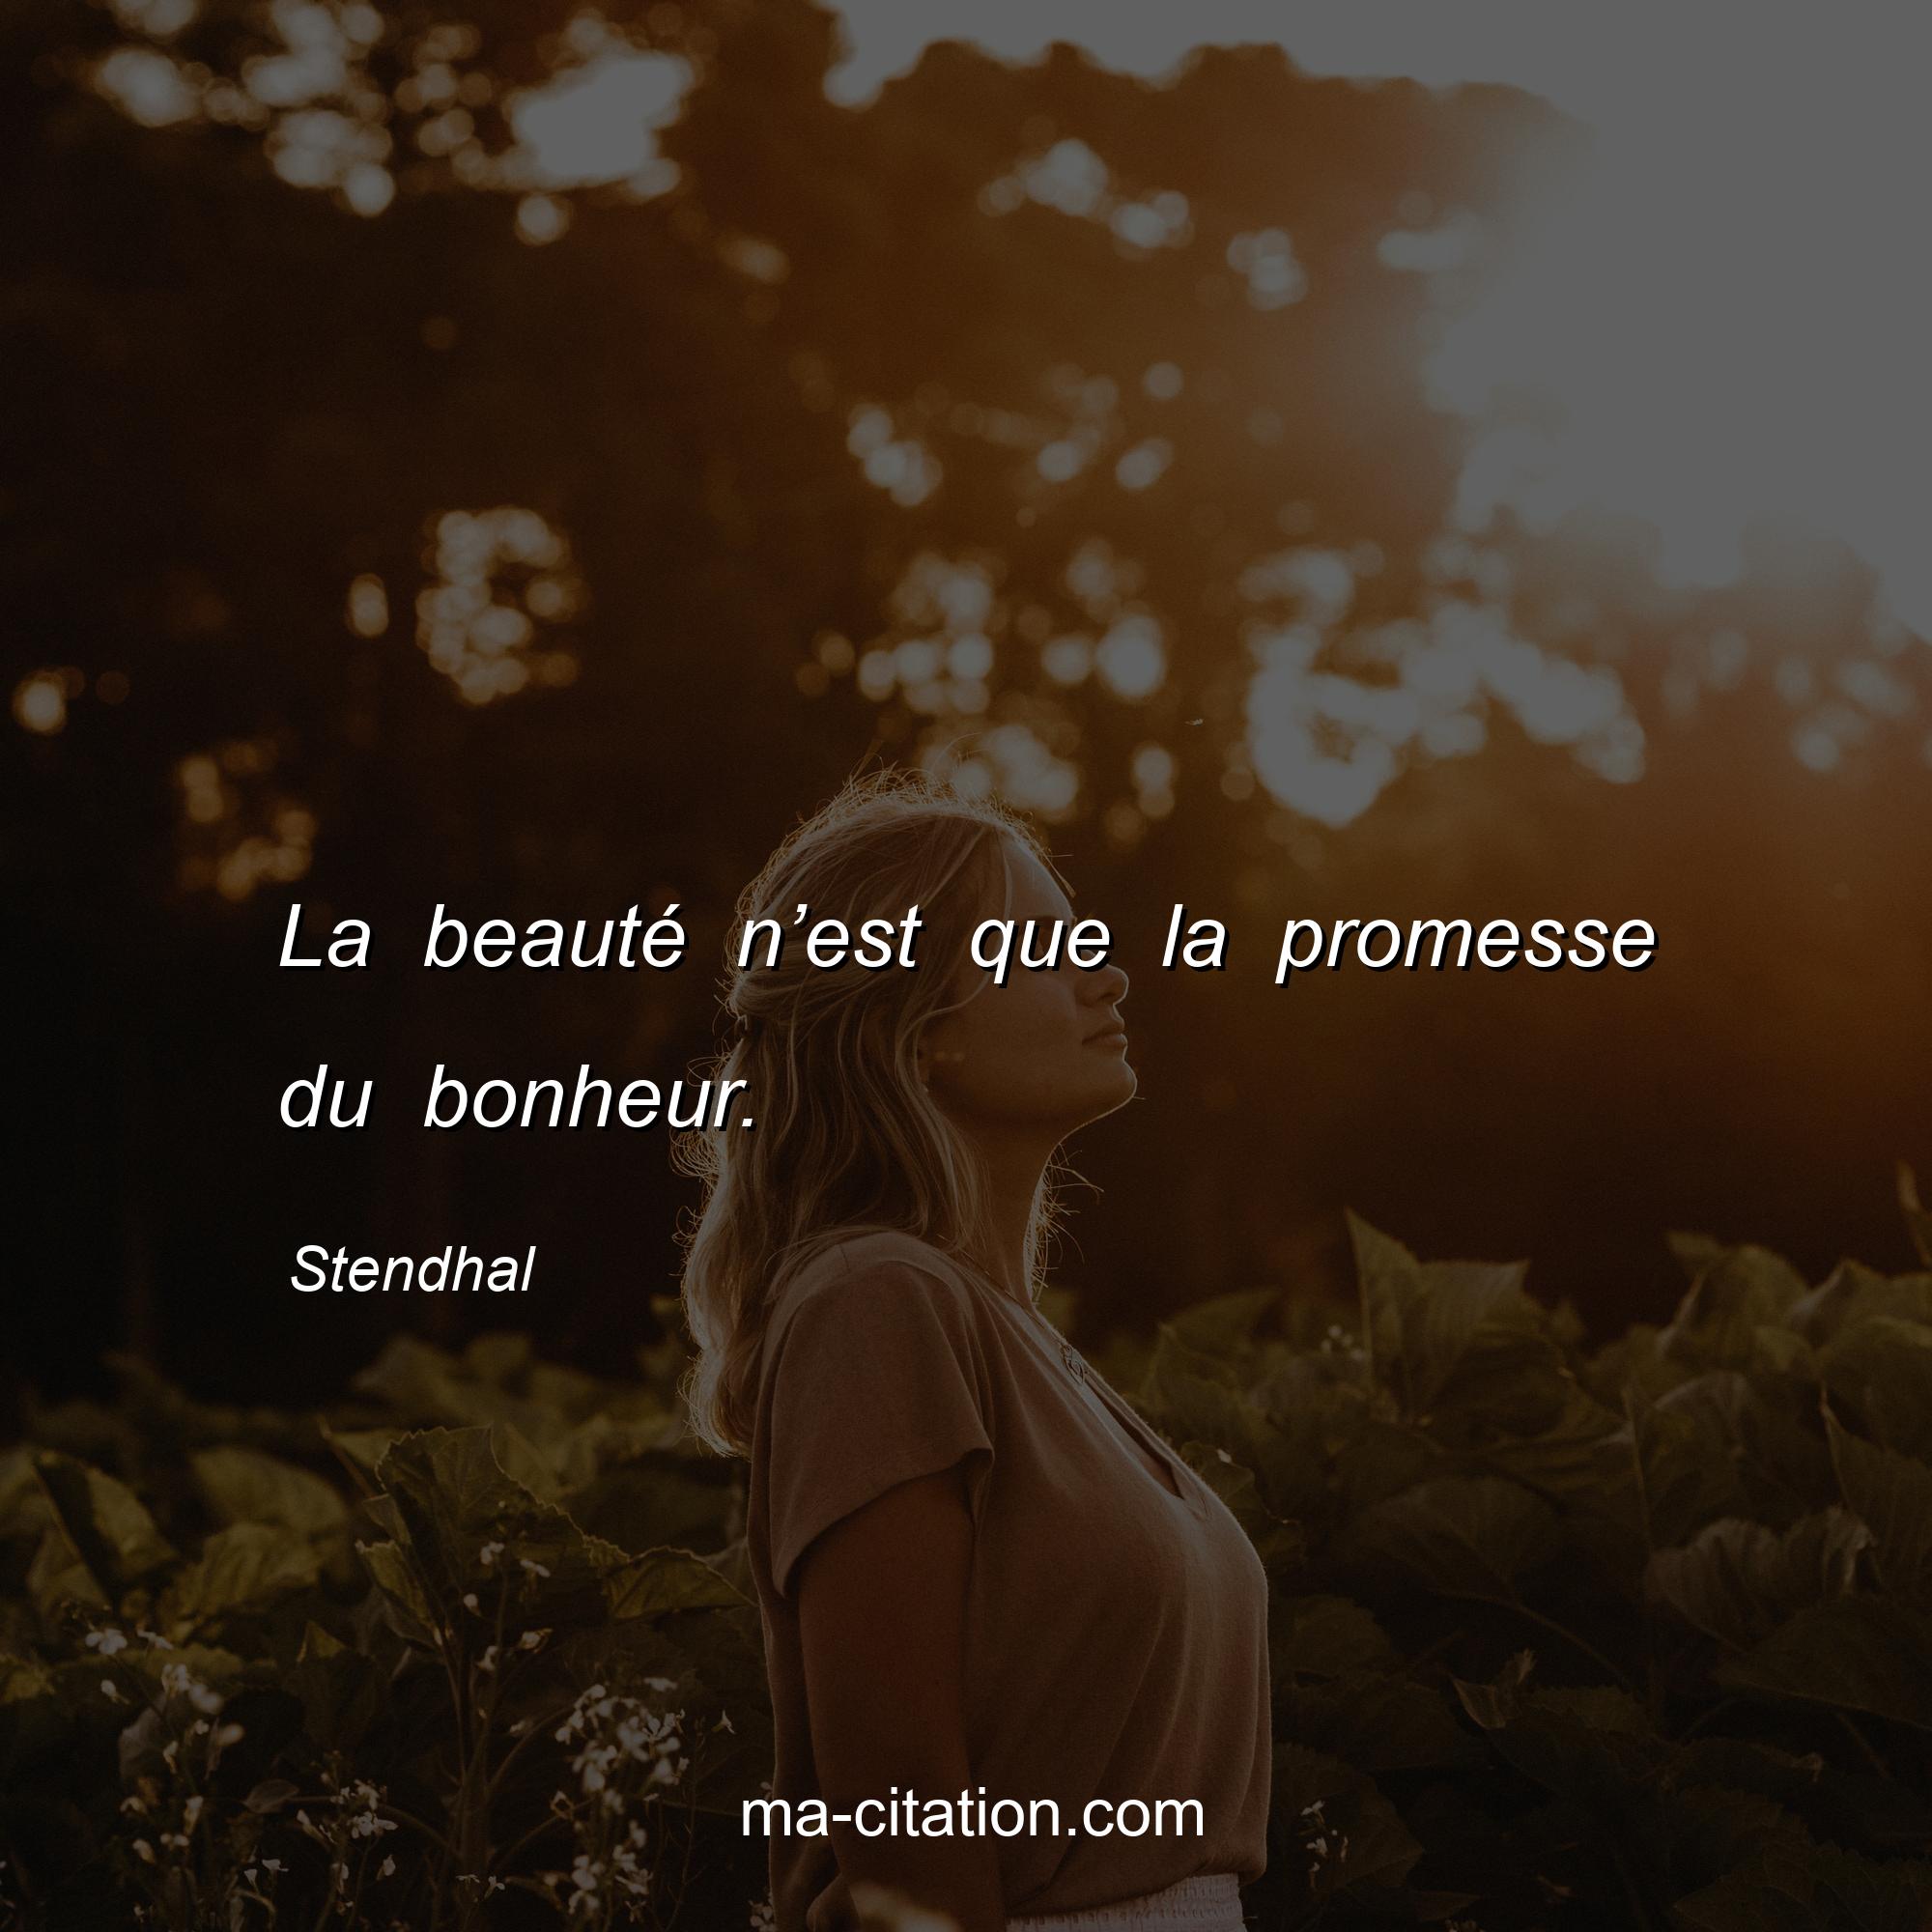 Stendhal : La beauté n’est que la promesse du bonheur.